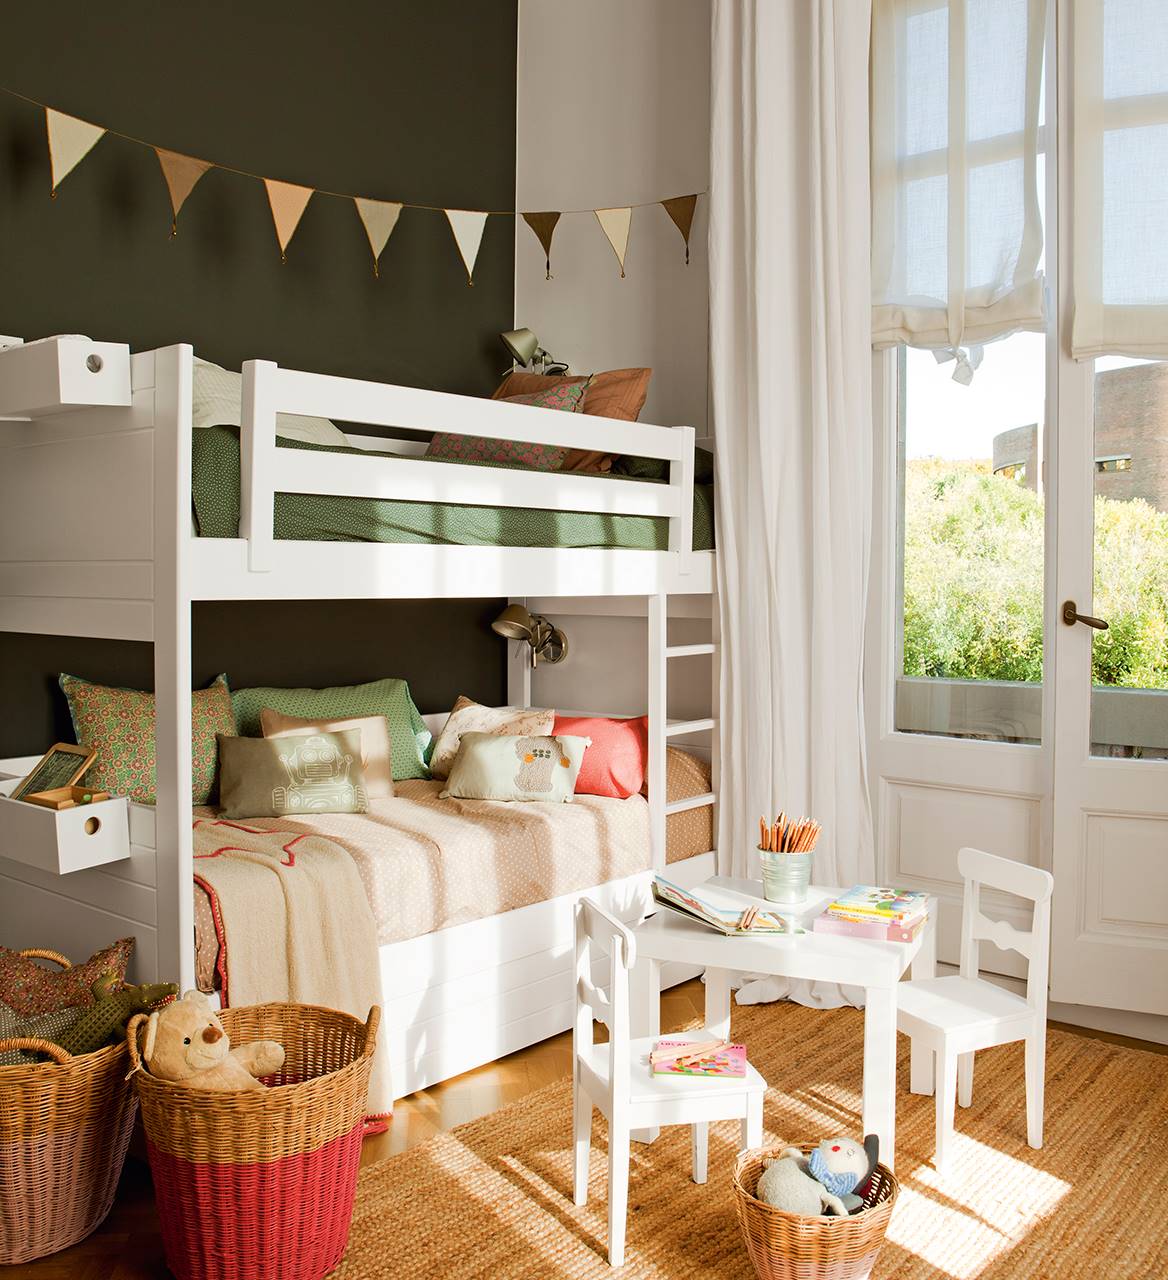 Dormitorio infantil con litera blanca y pared pintada en color verde oscuro